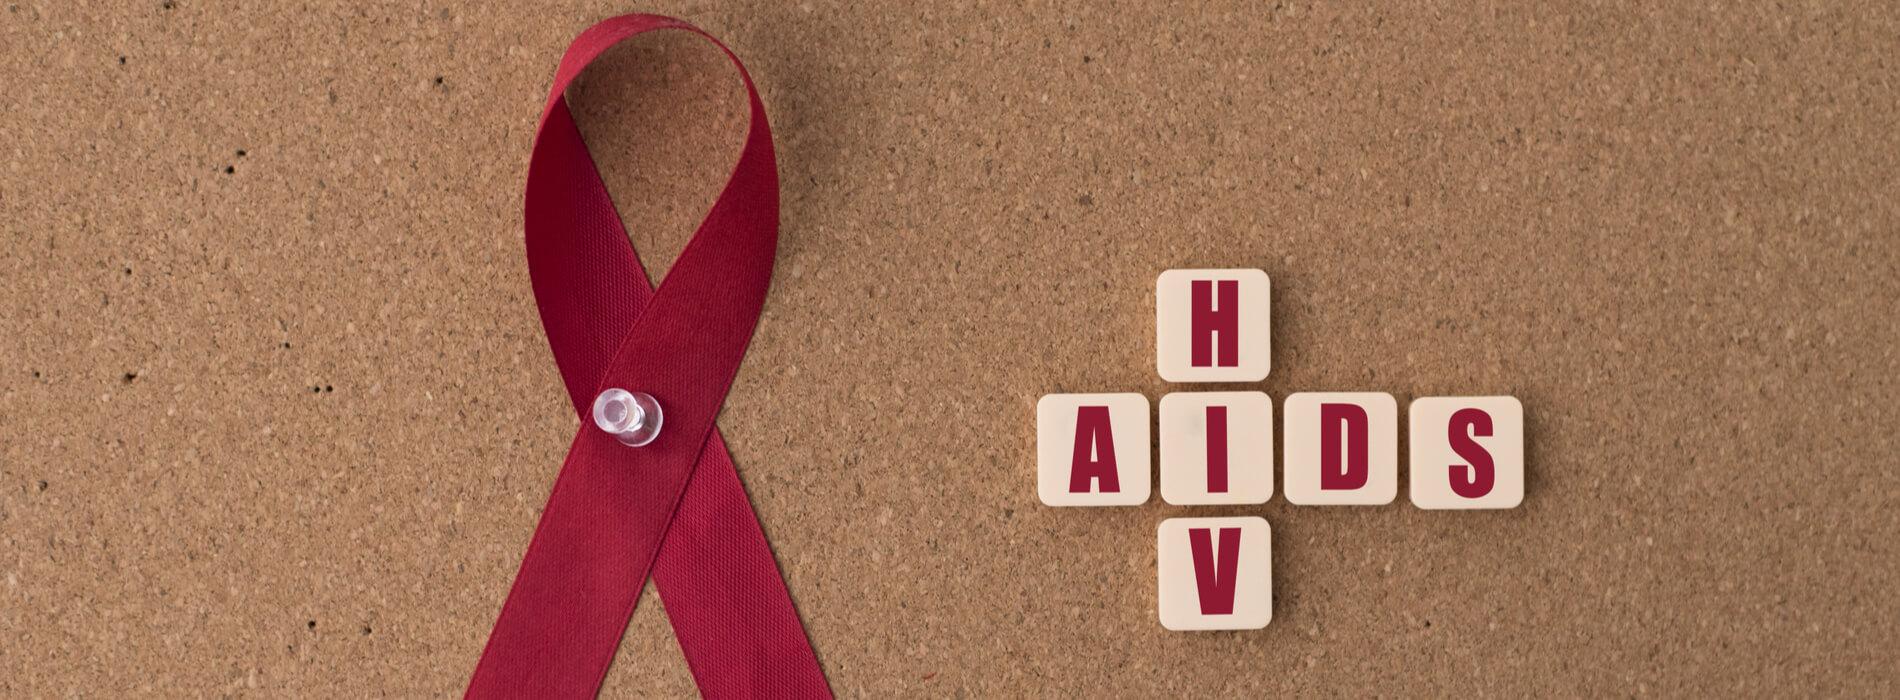 HIV- czym jest, w jaki sposób można się zarazić? Kiedy wykonać testy  na HIV?